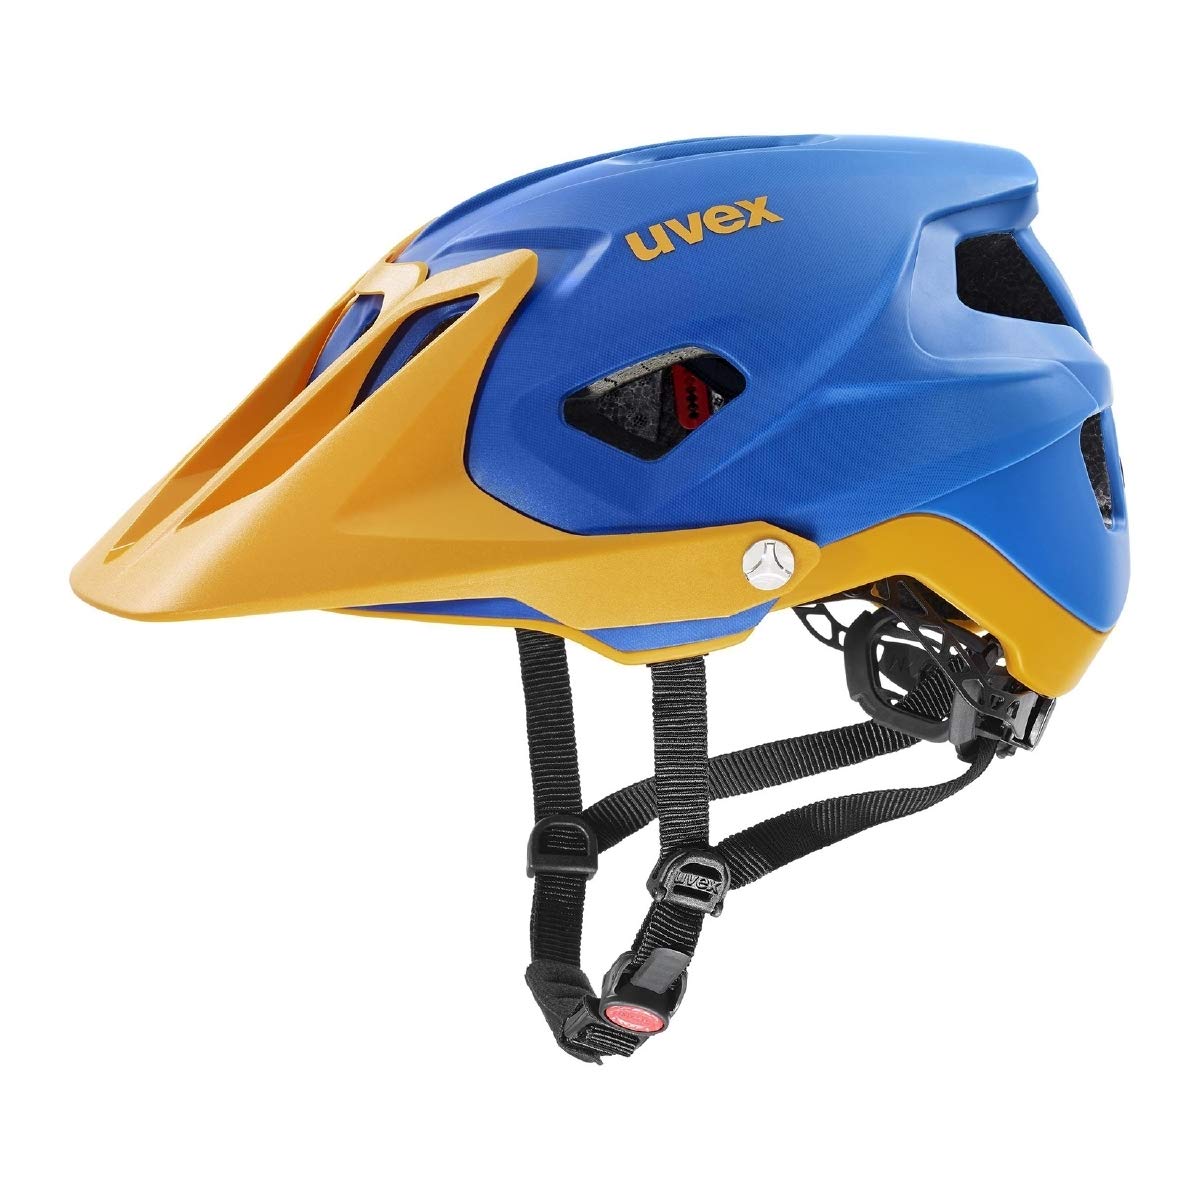 uvex quatro integrale - extrem leichter MTB-Helm für Damen und Herren - individuelle Größenanpassung - verstellbarer Schirm - blue energy matt - 52-57 cm